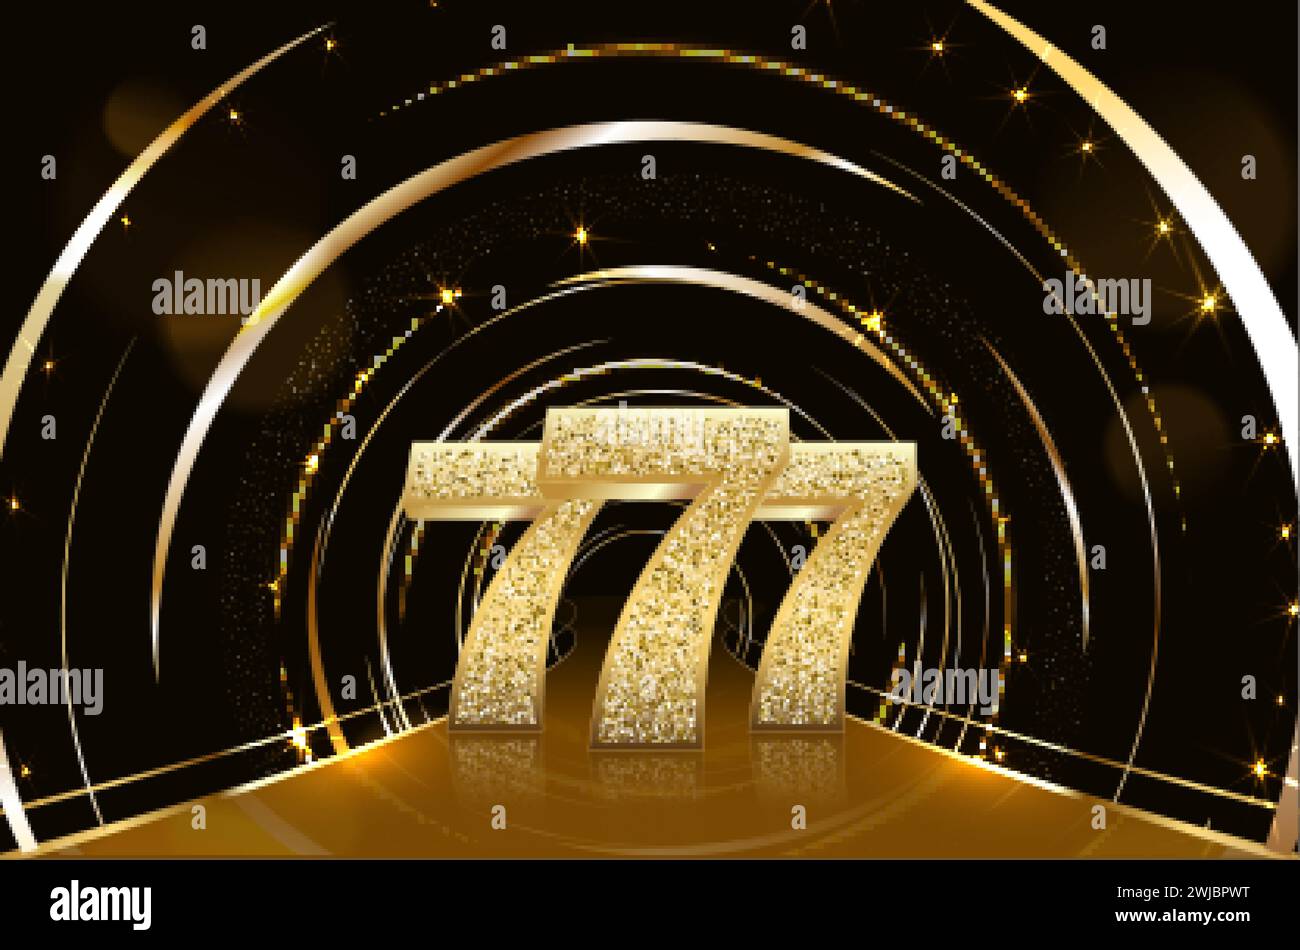 Drei golden glitzernde Siebener auf schwarzem Hintergrund. Luxus-Casino-Banner Big Win Slots 777 . Vektorgrafik Stock Vektor